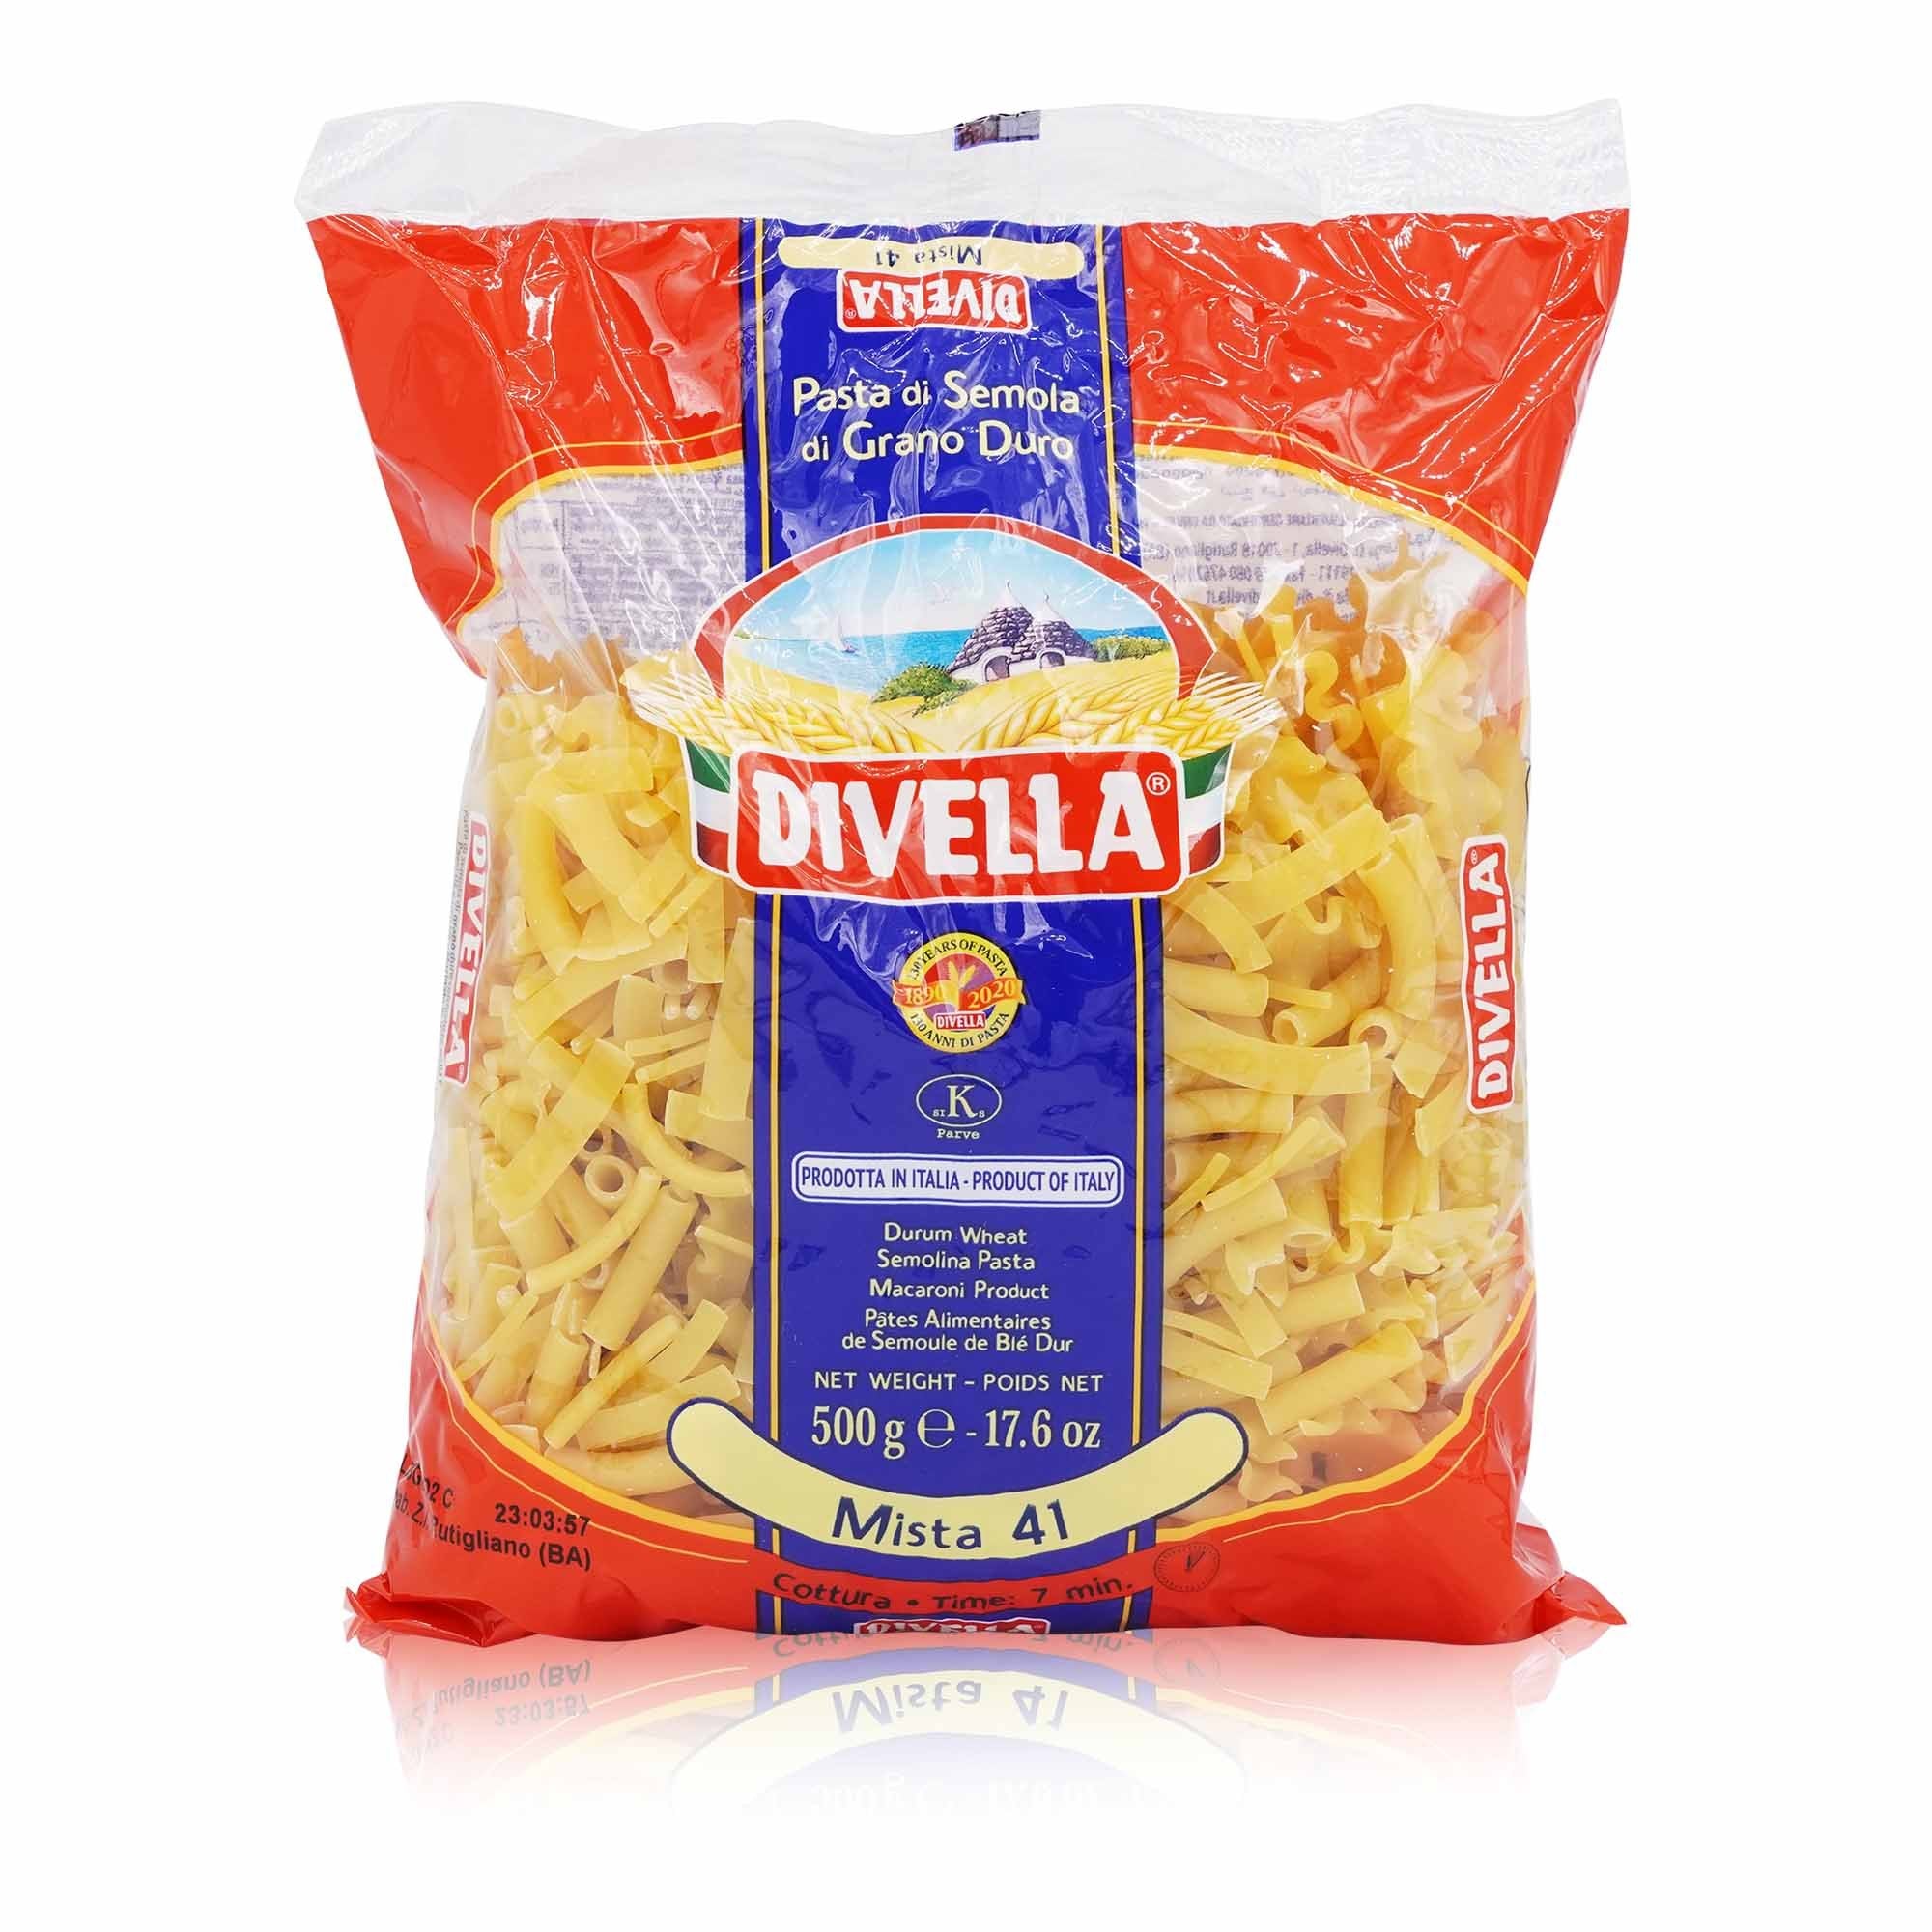 DIVELLA - Mista Nr. 41 - 0,5kg - italienisch - einkaufen.de